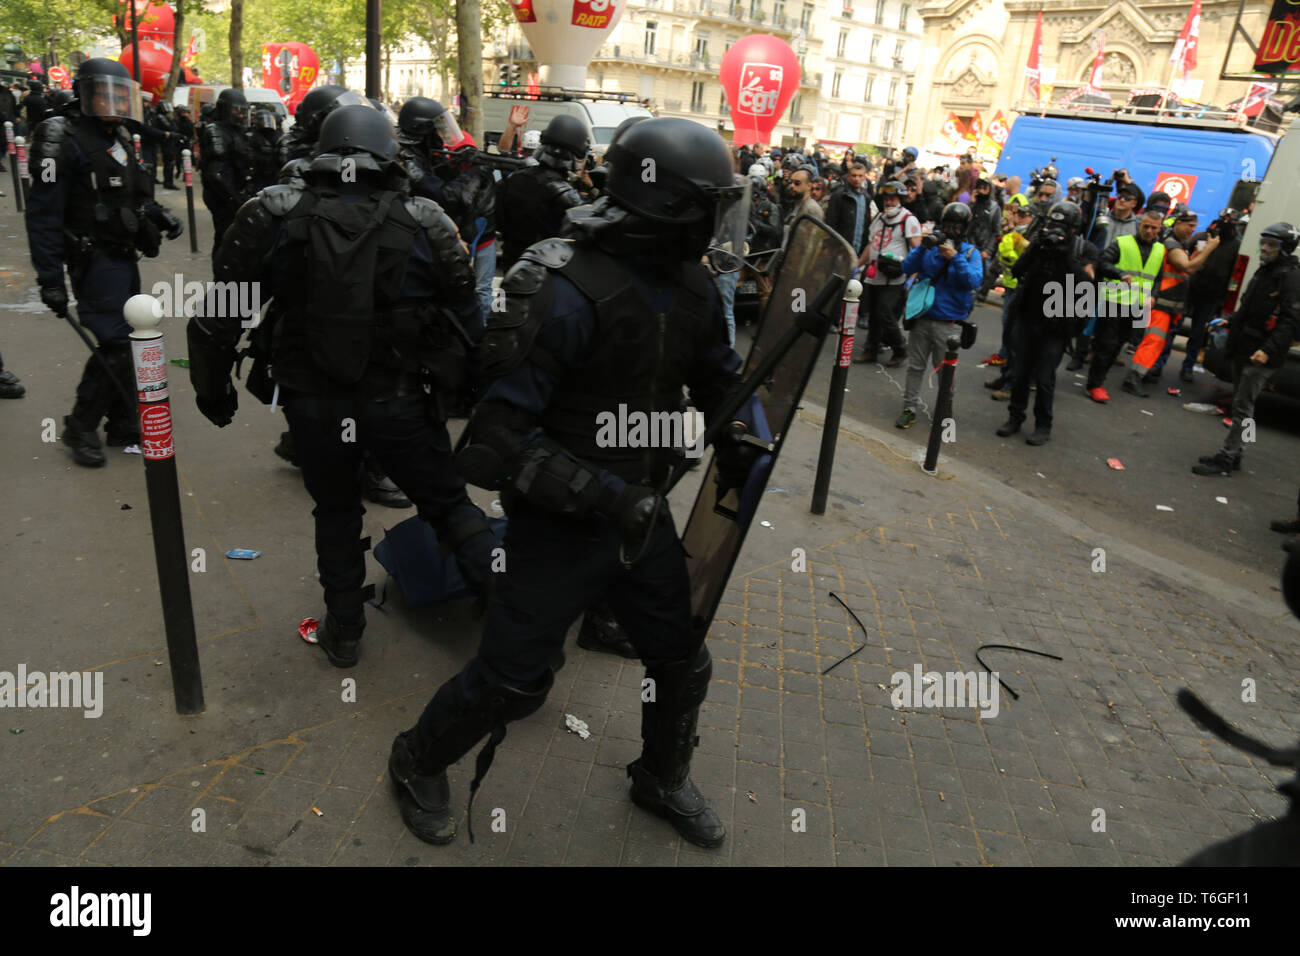 Paris, France. Le 1 mai 2019 - Des milliers de personnes se sont rassemblées pour les manifestations du premier mai dans la capitale française avec l'éclatement des affrontements entre certains des manifestants et la police. De nombreux manifestants ont porté le gilet jaune et Black Bloc certains groupes anti-capitalistes sont également joints des marches. Plusieurs centaines de policiers avaient été déployés dans Paris, et ils ont tiré des gaz lacrymogènes, mais aussi des balles en caoutchouc et de bâton pour repousser les manifestants. Credit : ZUMA Press, Inc./Alamy Live News Banque D'Images